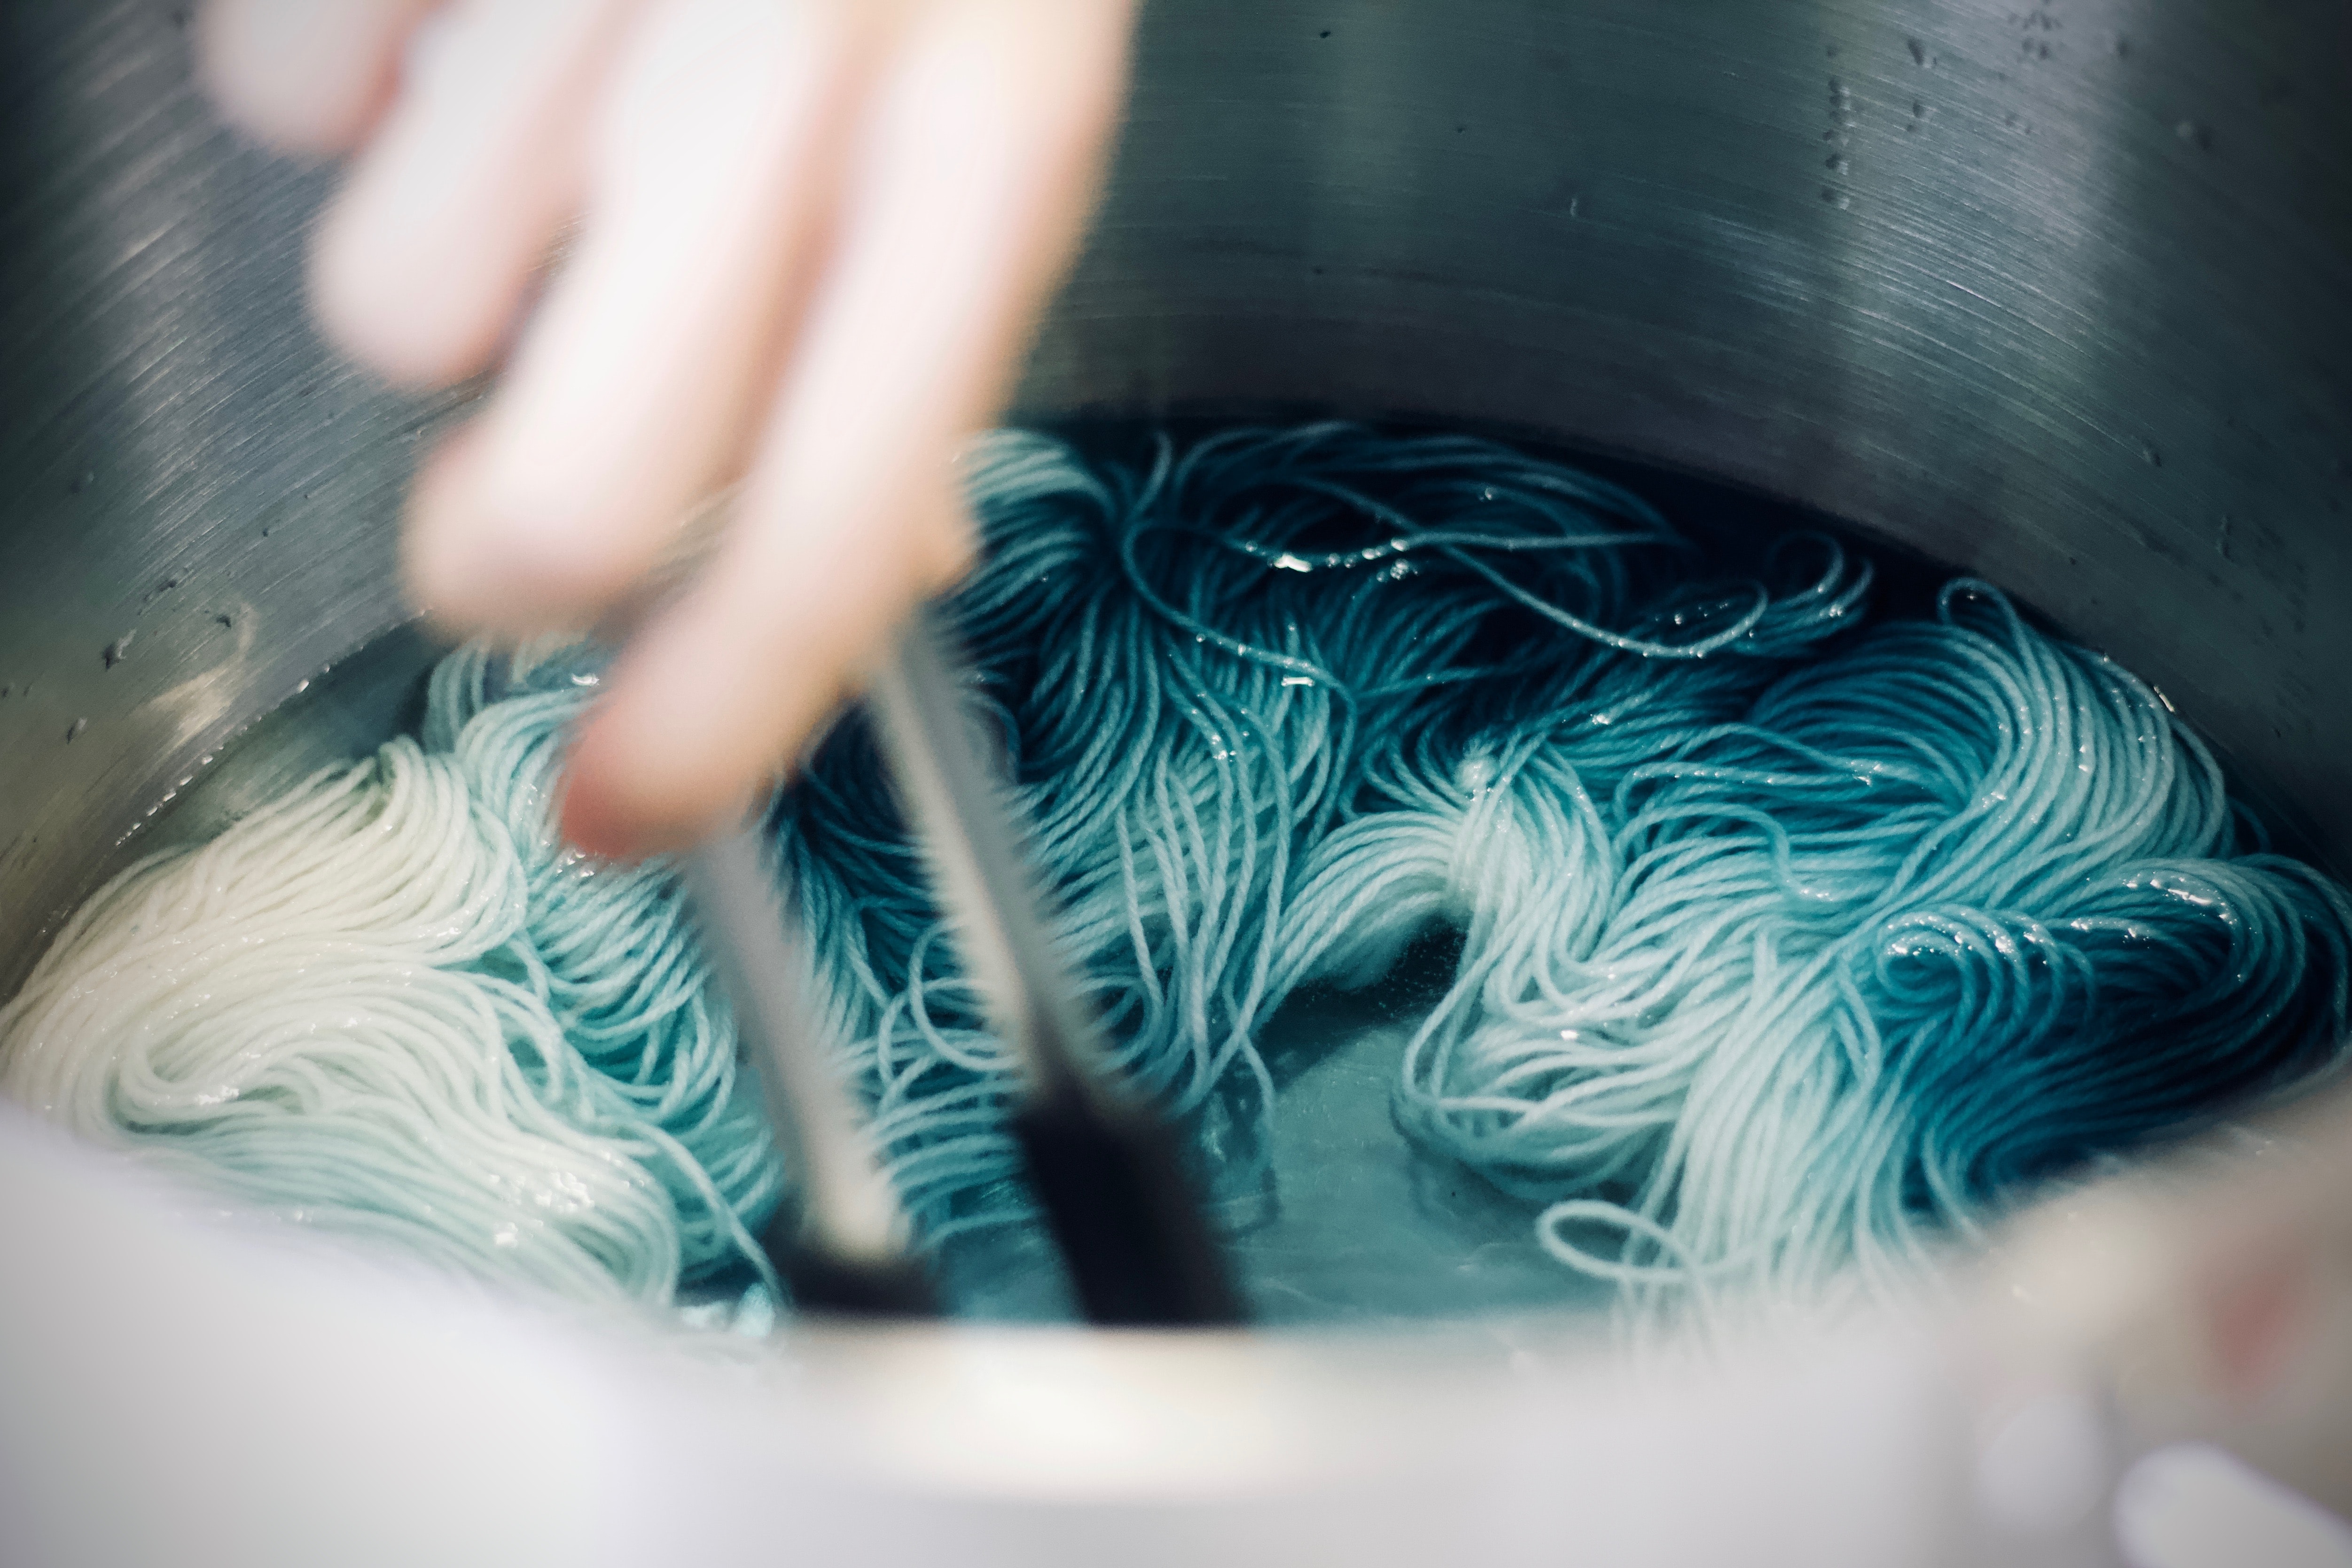 Yarn soaking in a light blue dye